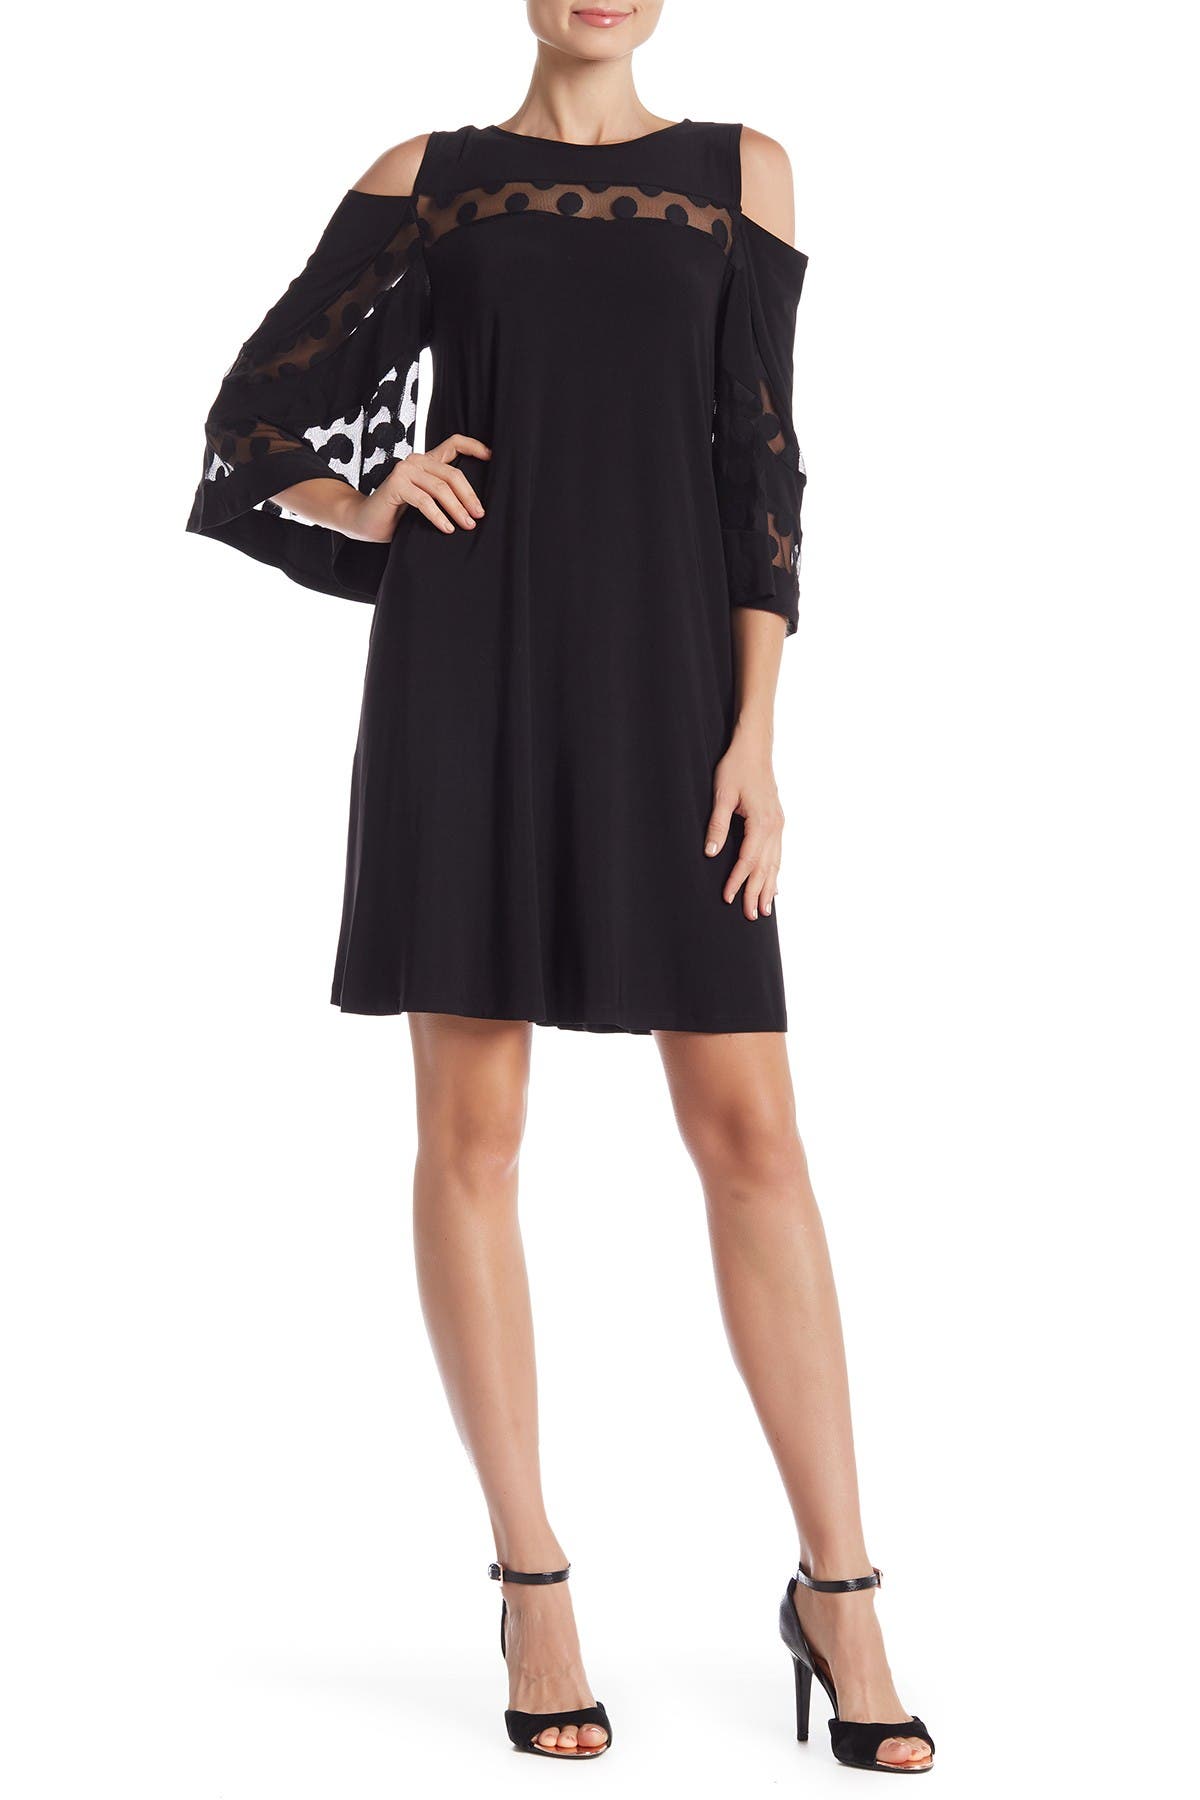 Nina Leonard 3/4 Sleeve Cold Shoulder Lace Dress In Black | ModeSens